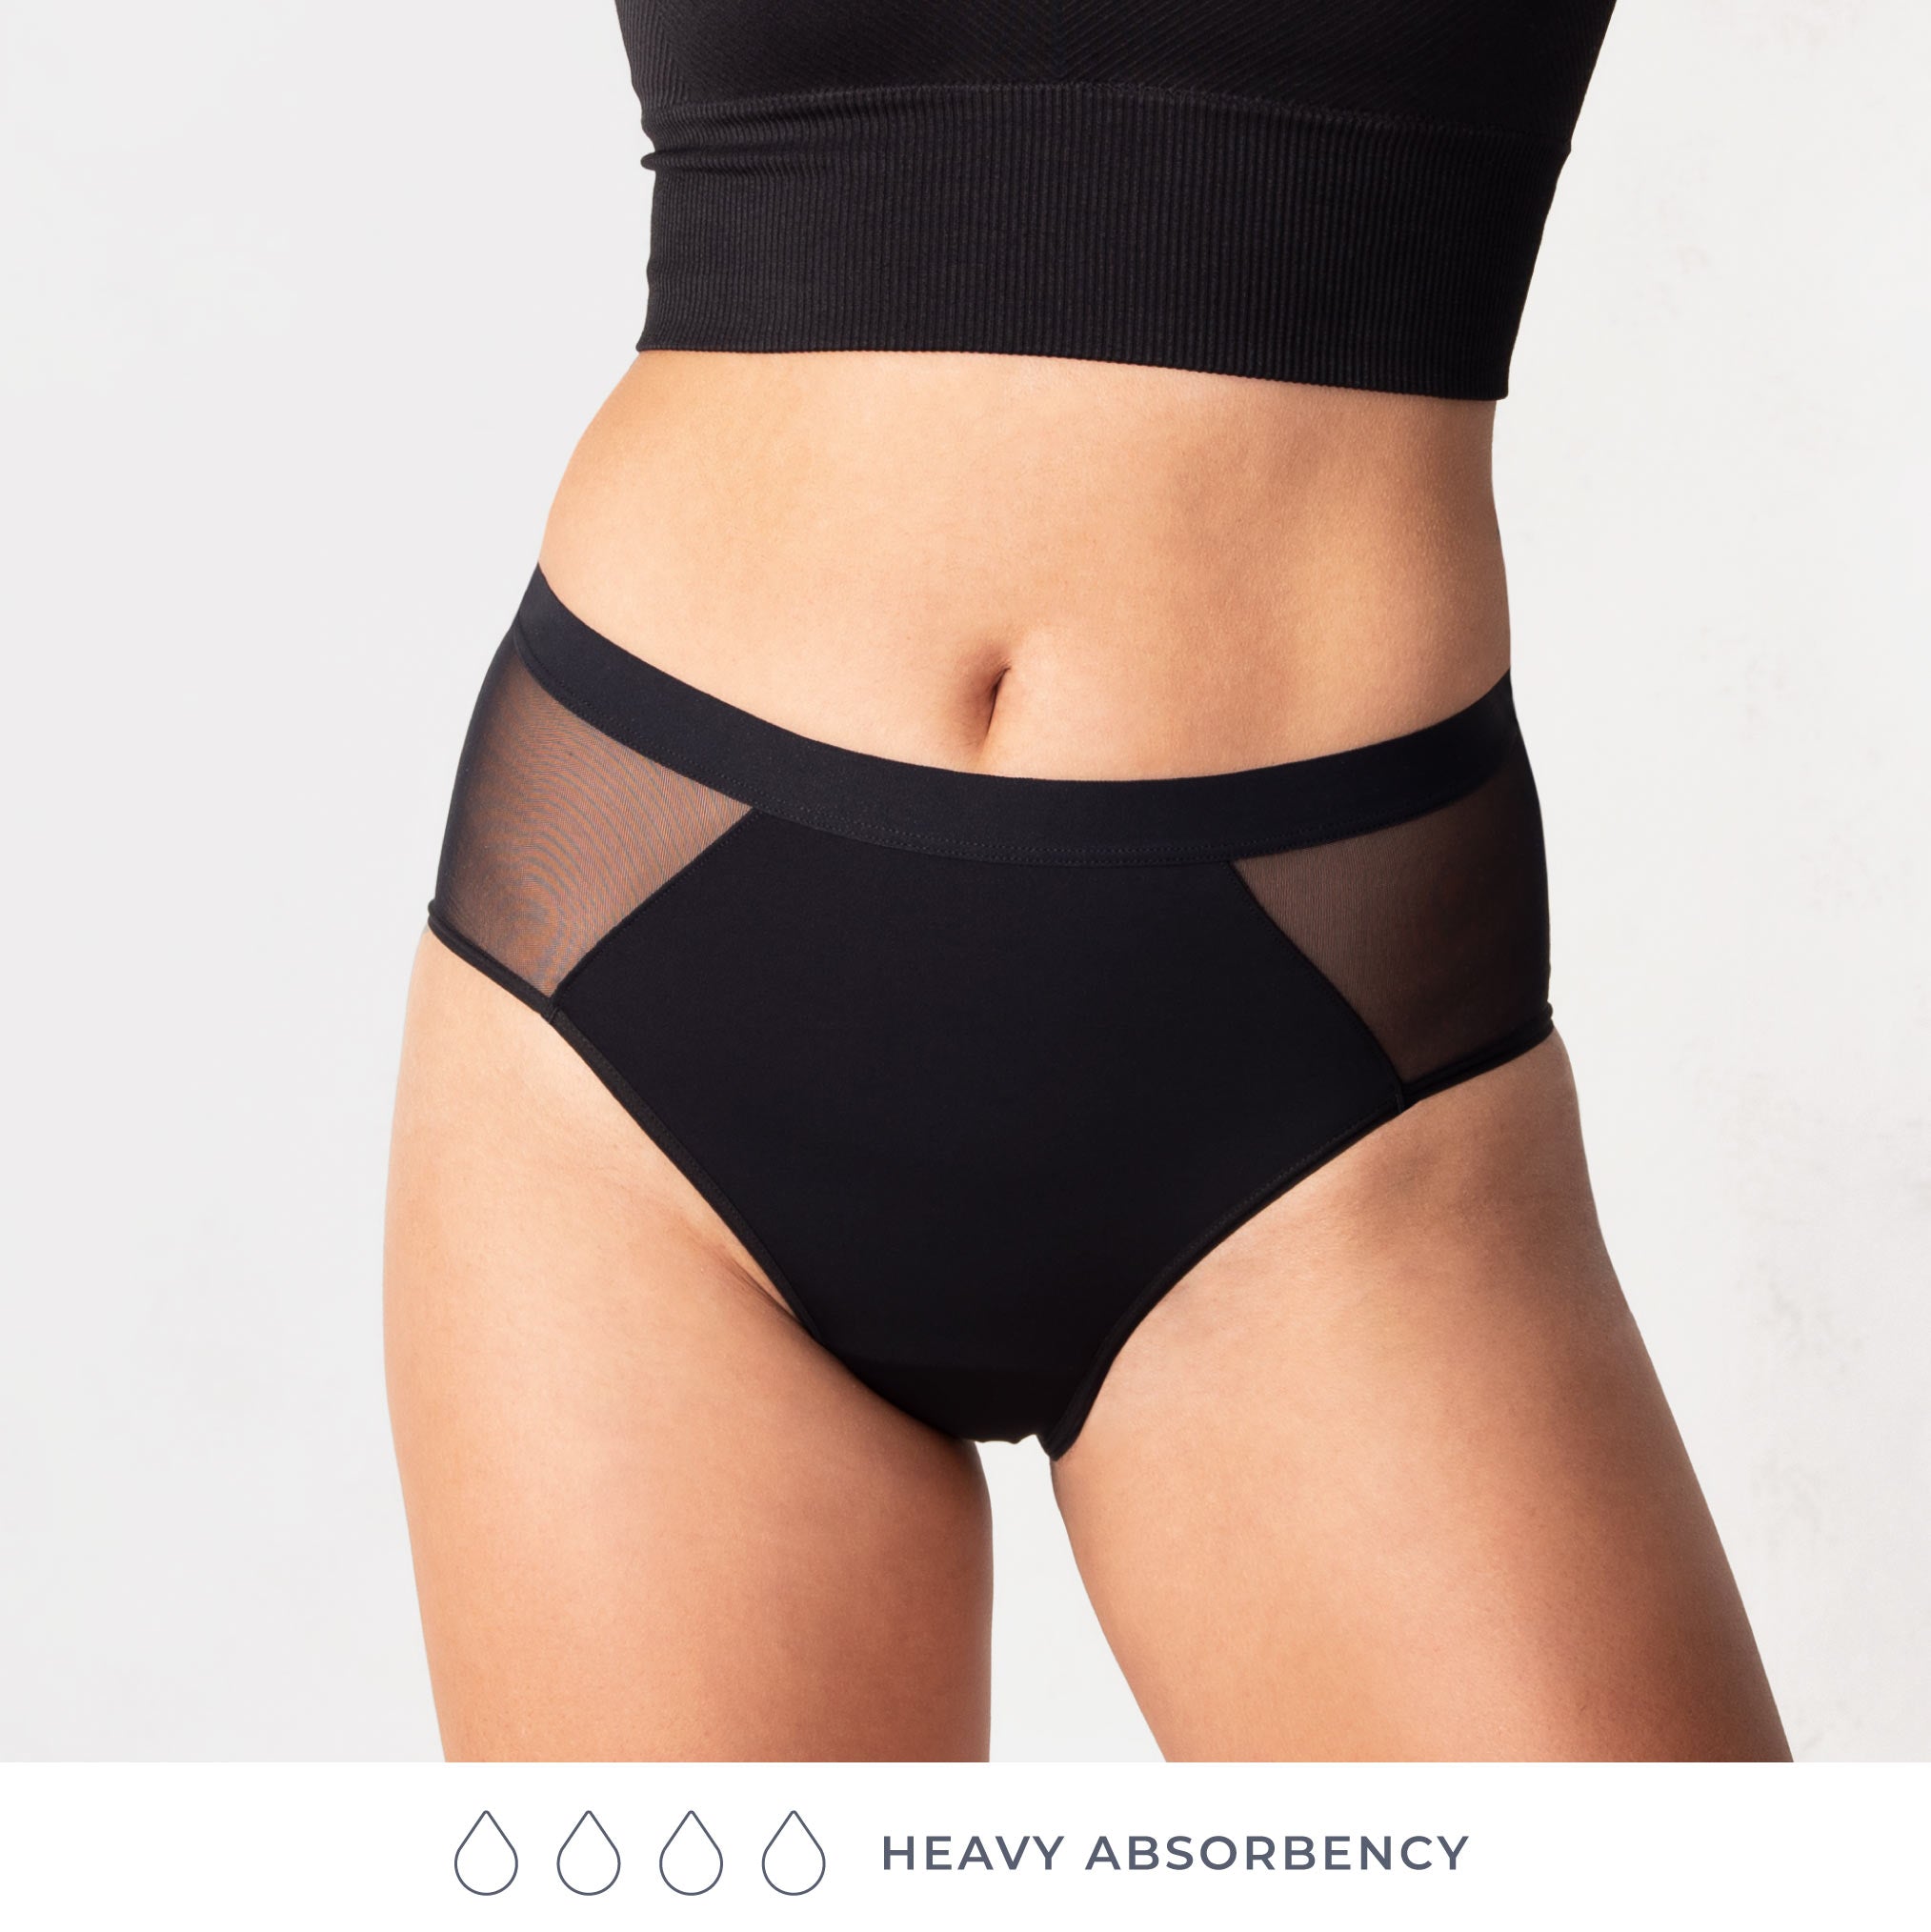 Wholesale Super Absorbency High-Waist Brief Period Underwear for